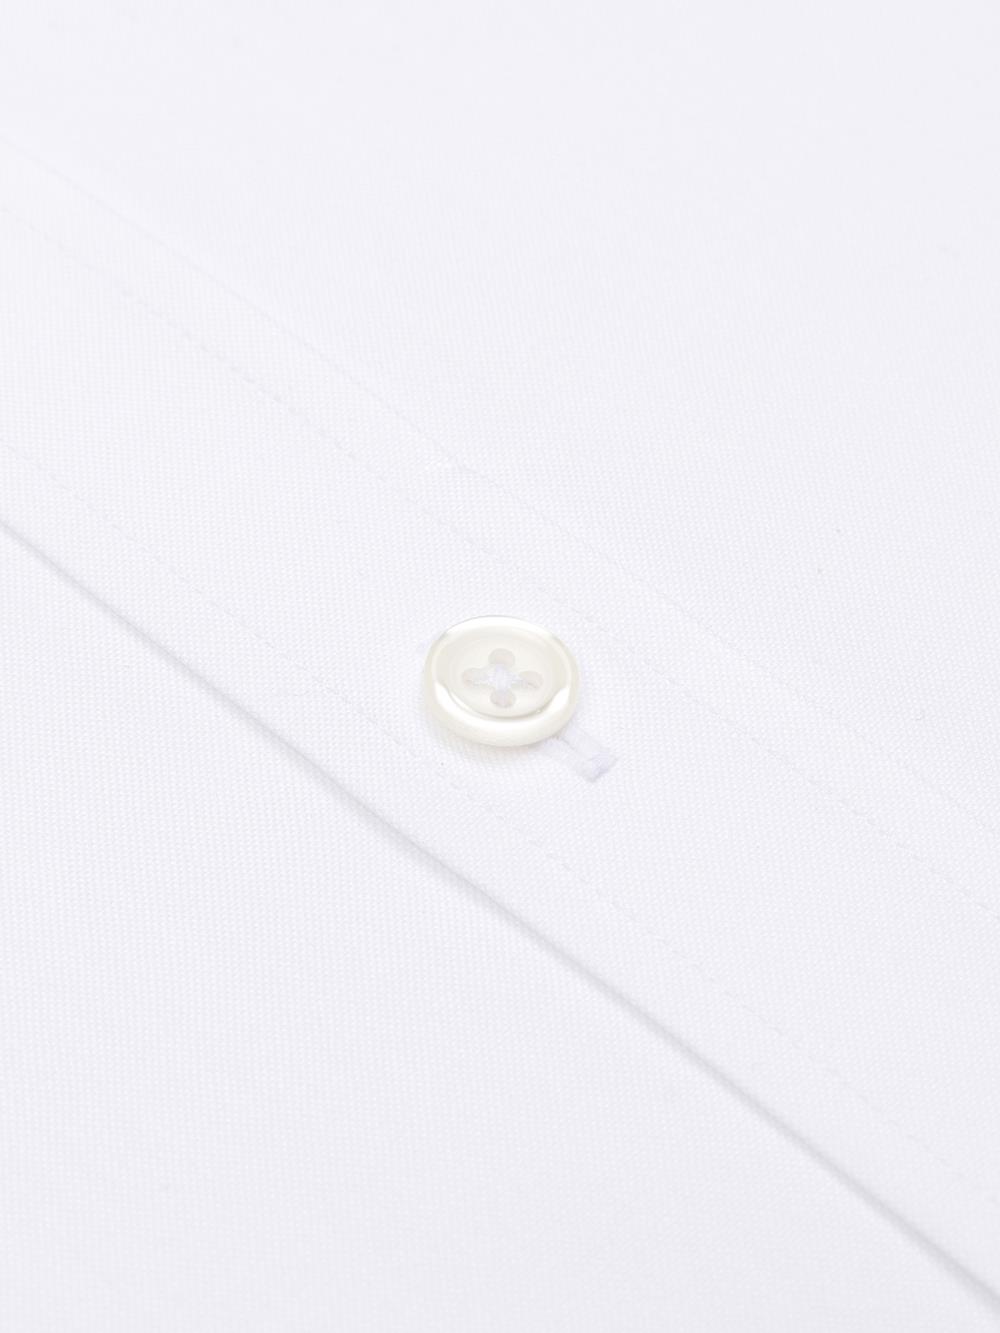 Camicia slim fit a punta bianca - Colletto abbottonato